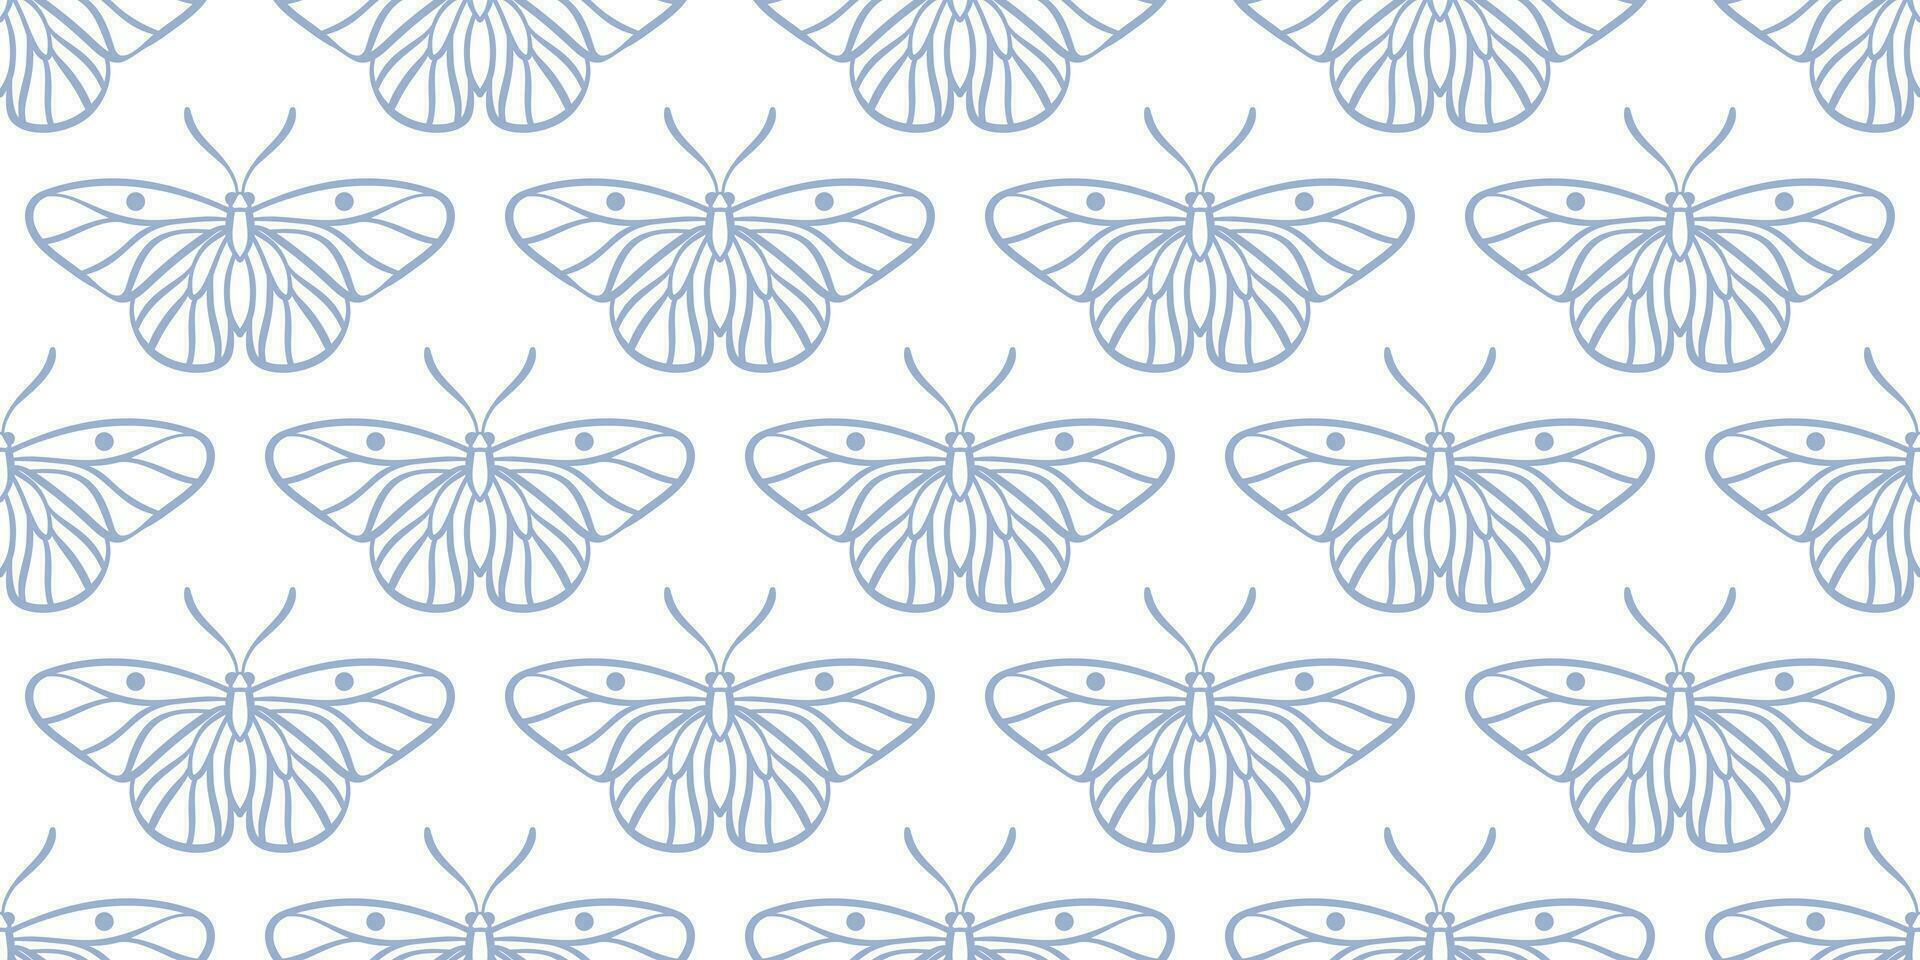 Blau Weiß Schmetterling Vektor Muster Hintergrund, nahtlos wiederholen